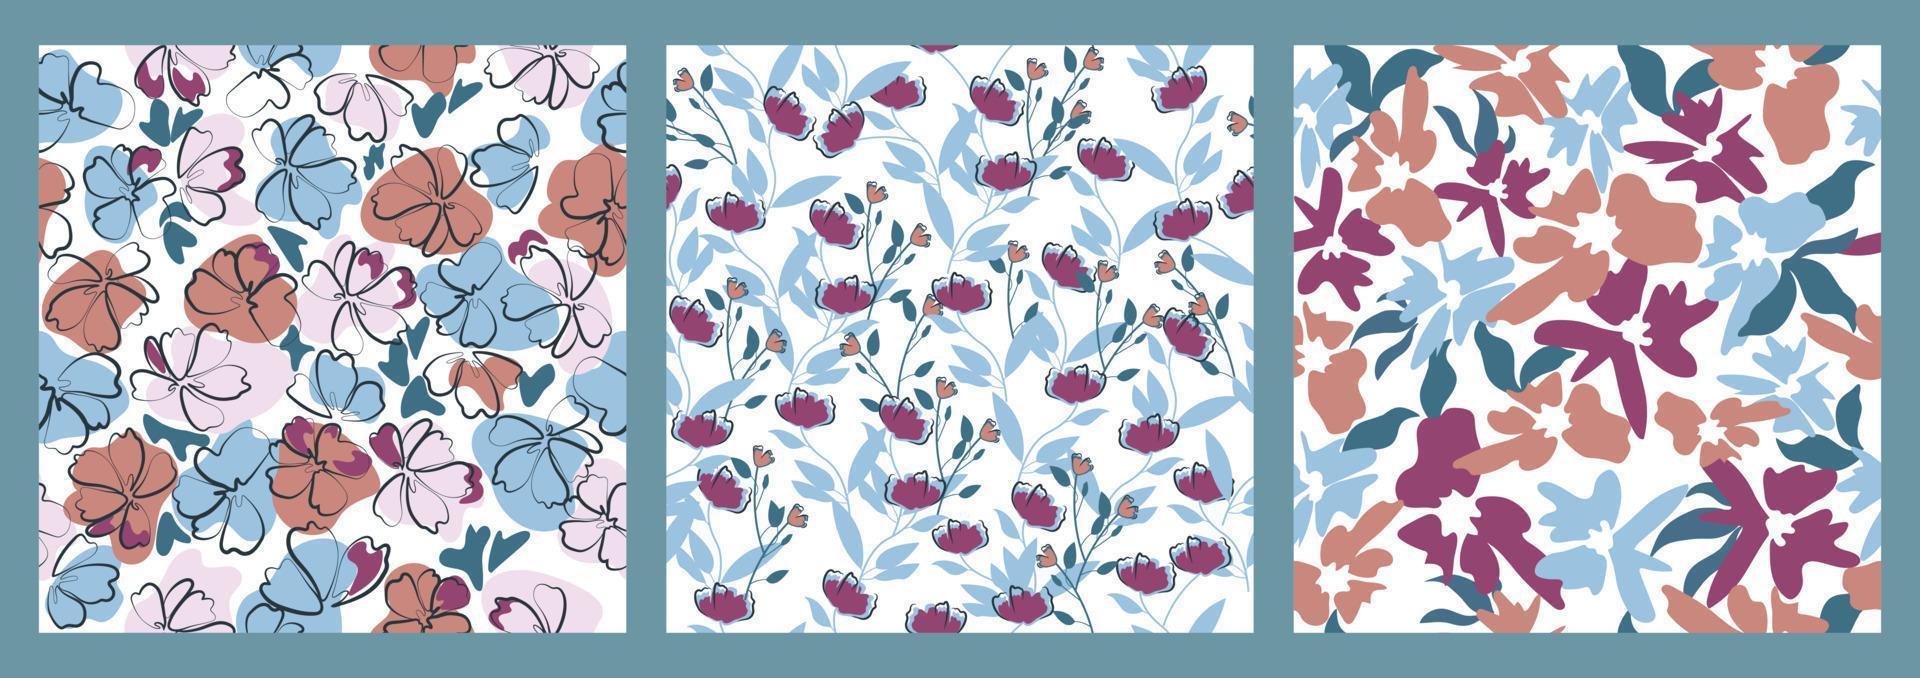 coleção abstrata de padrões sem emenda com elementos de flor. design para tecido, papel, capa vetor